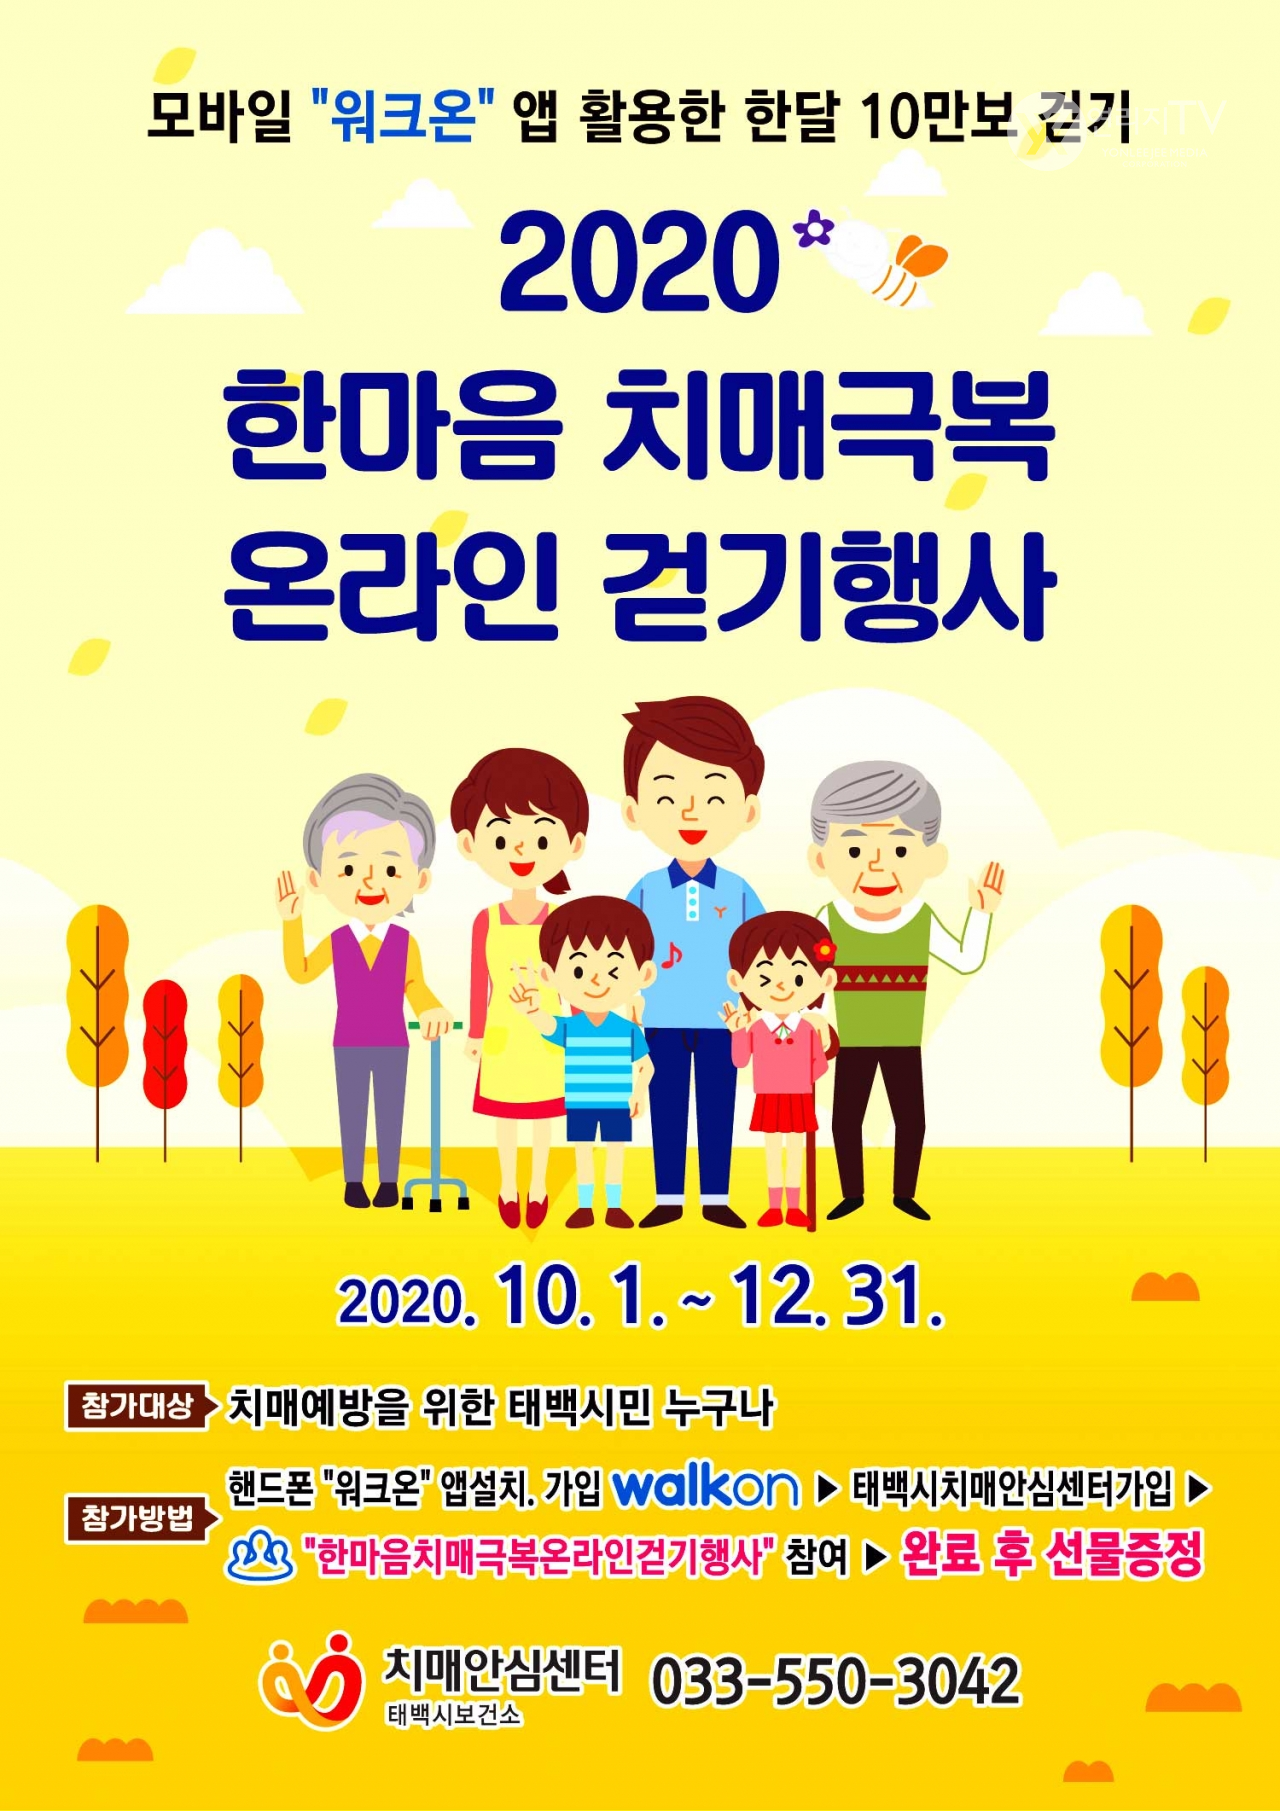 태백시 - 2020 한마음 치매극복 온라인 걷기행사 개최 [태백시보건소 제공]